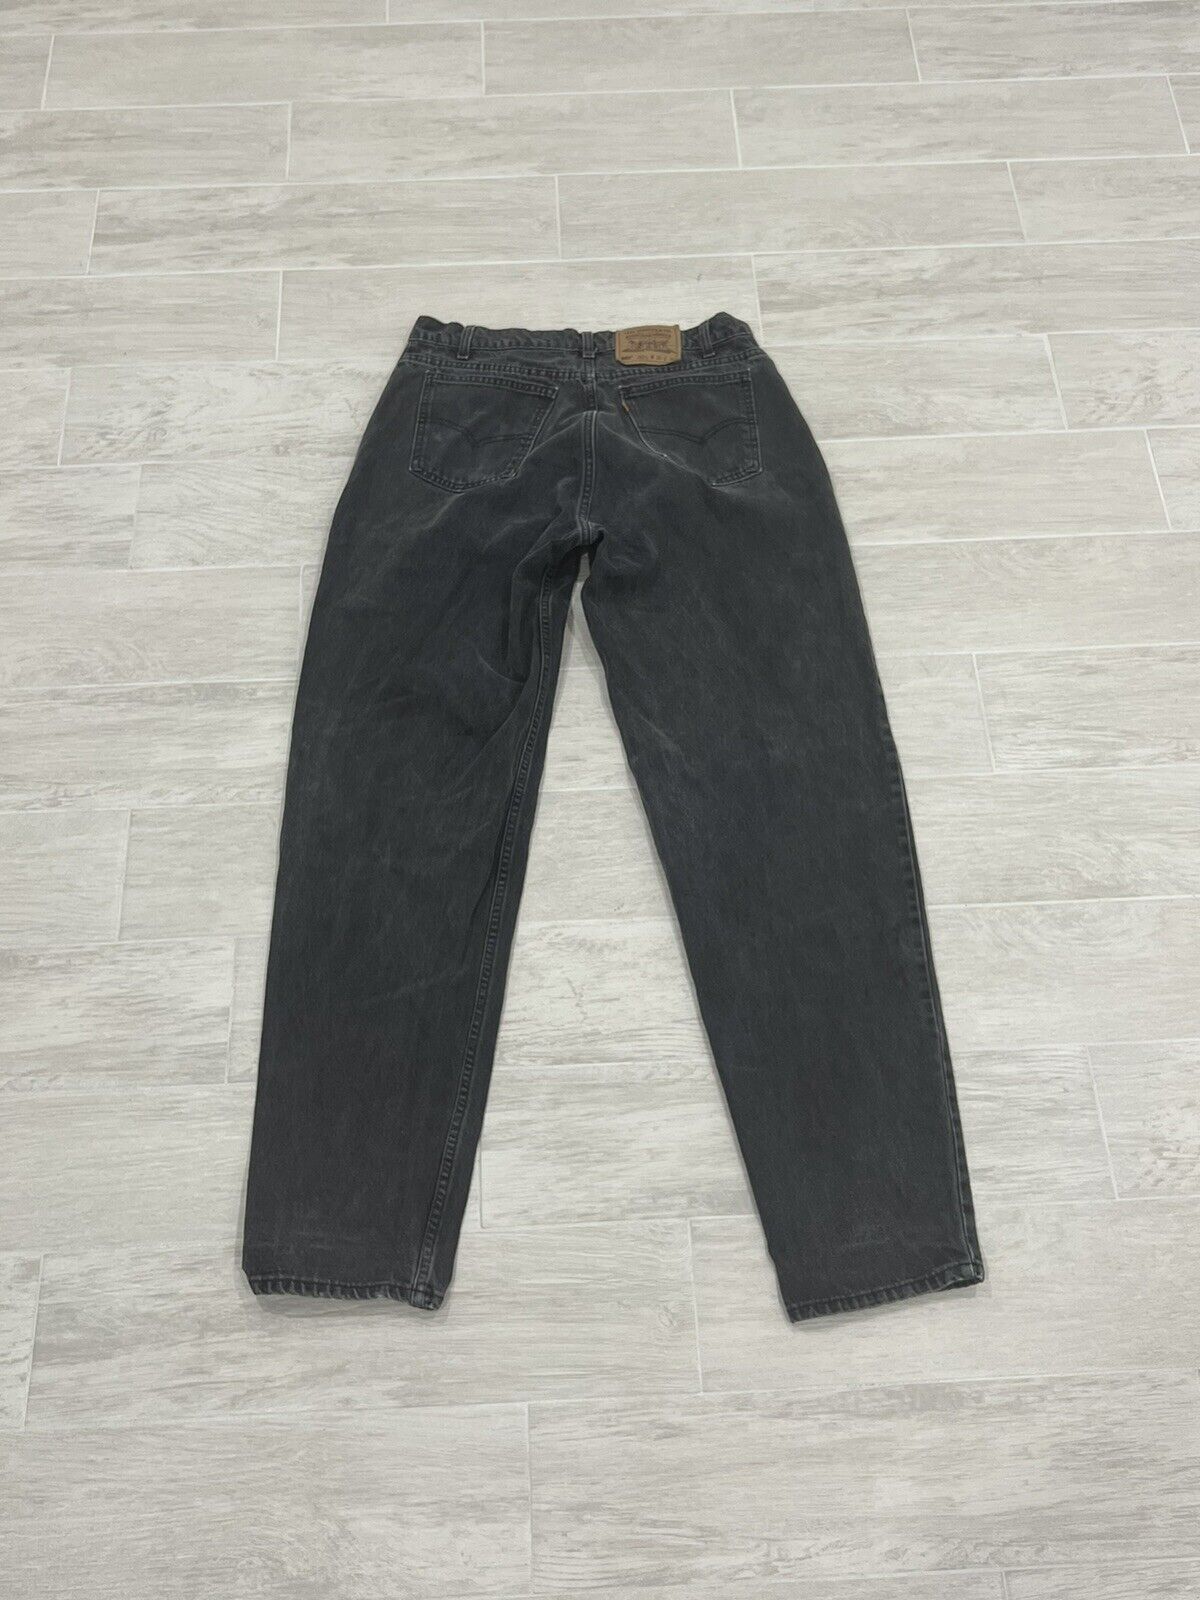 Vintage Levis 560 Loose Fit Tapered Denim Orange Tab Jeans Men's Size 36 |  eBay